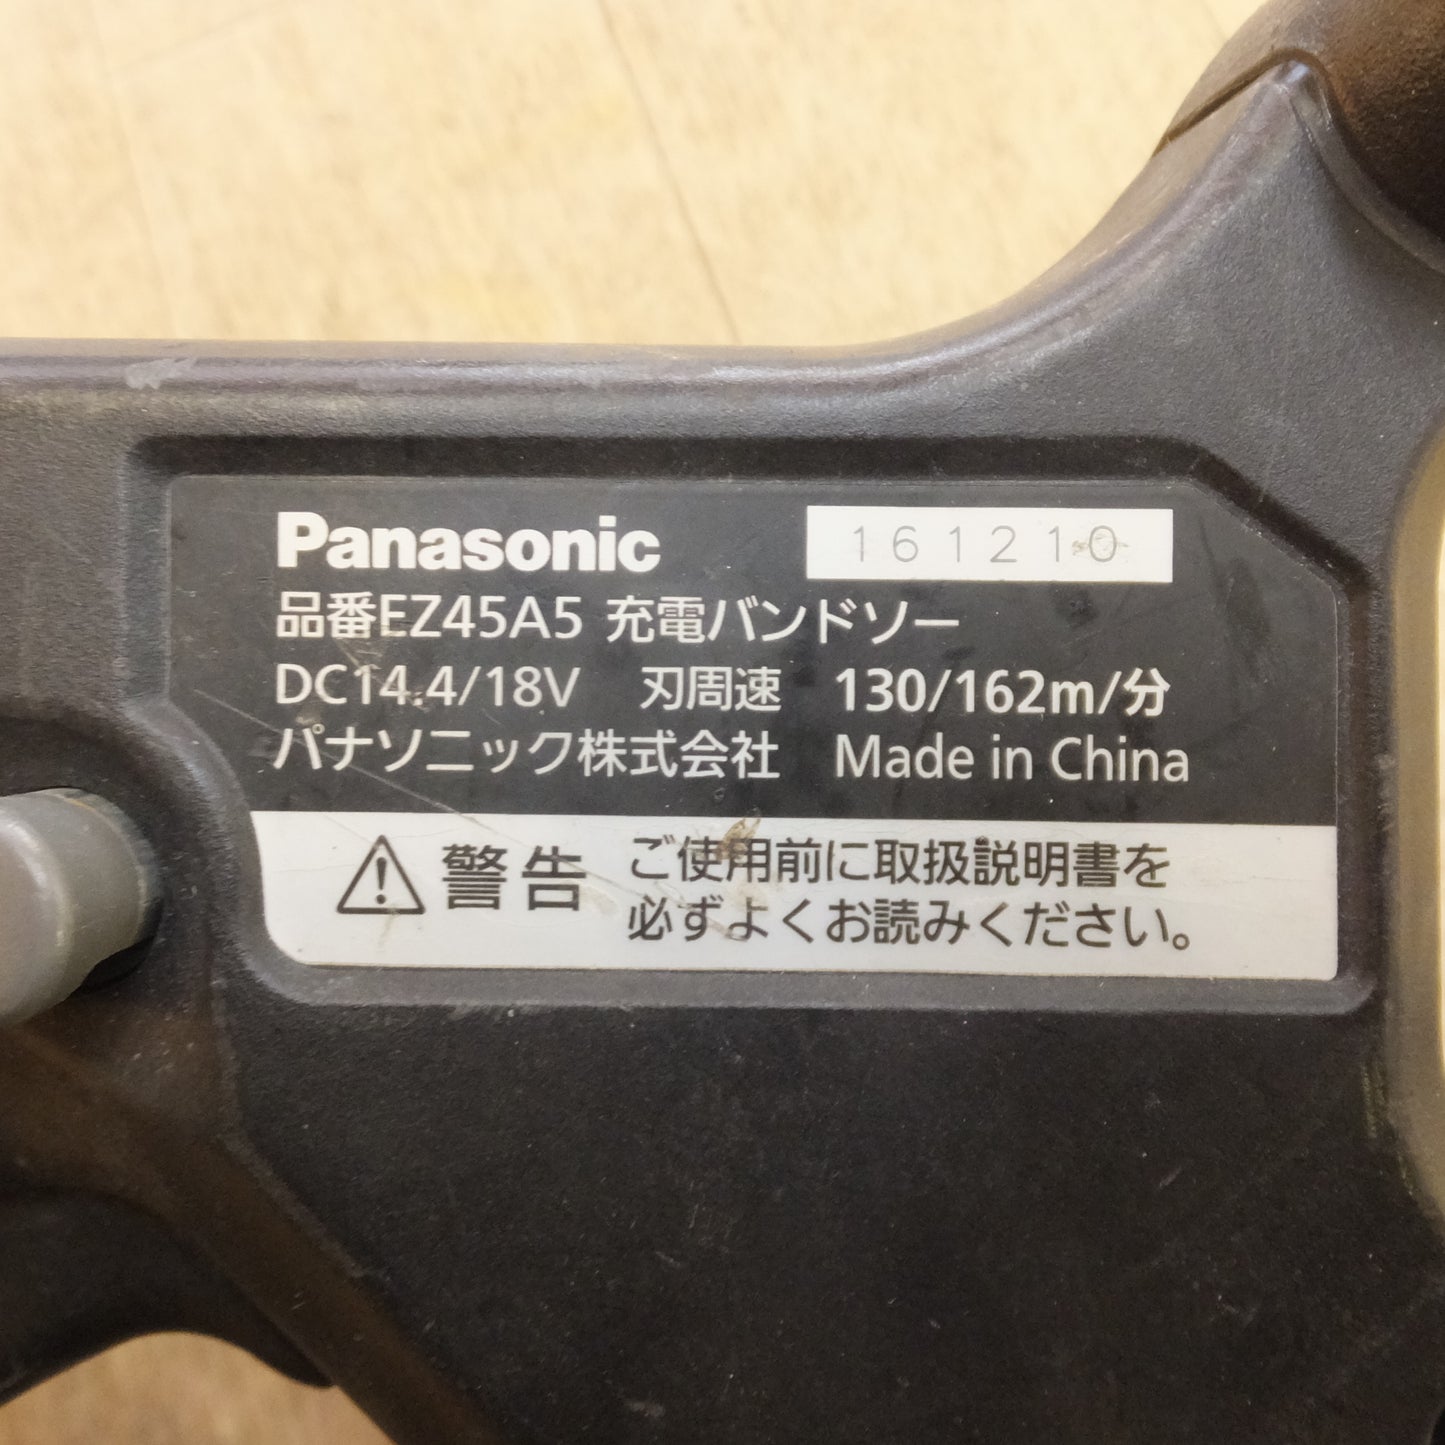 [送料無料]★パナソニック Panasonic 充電バンドソー EZ45A5LJ2G-B DC14.4/18V 本体のみ★